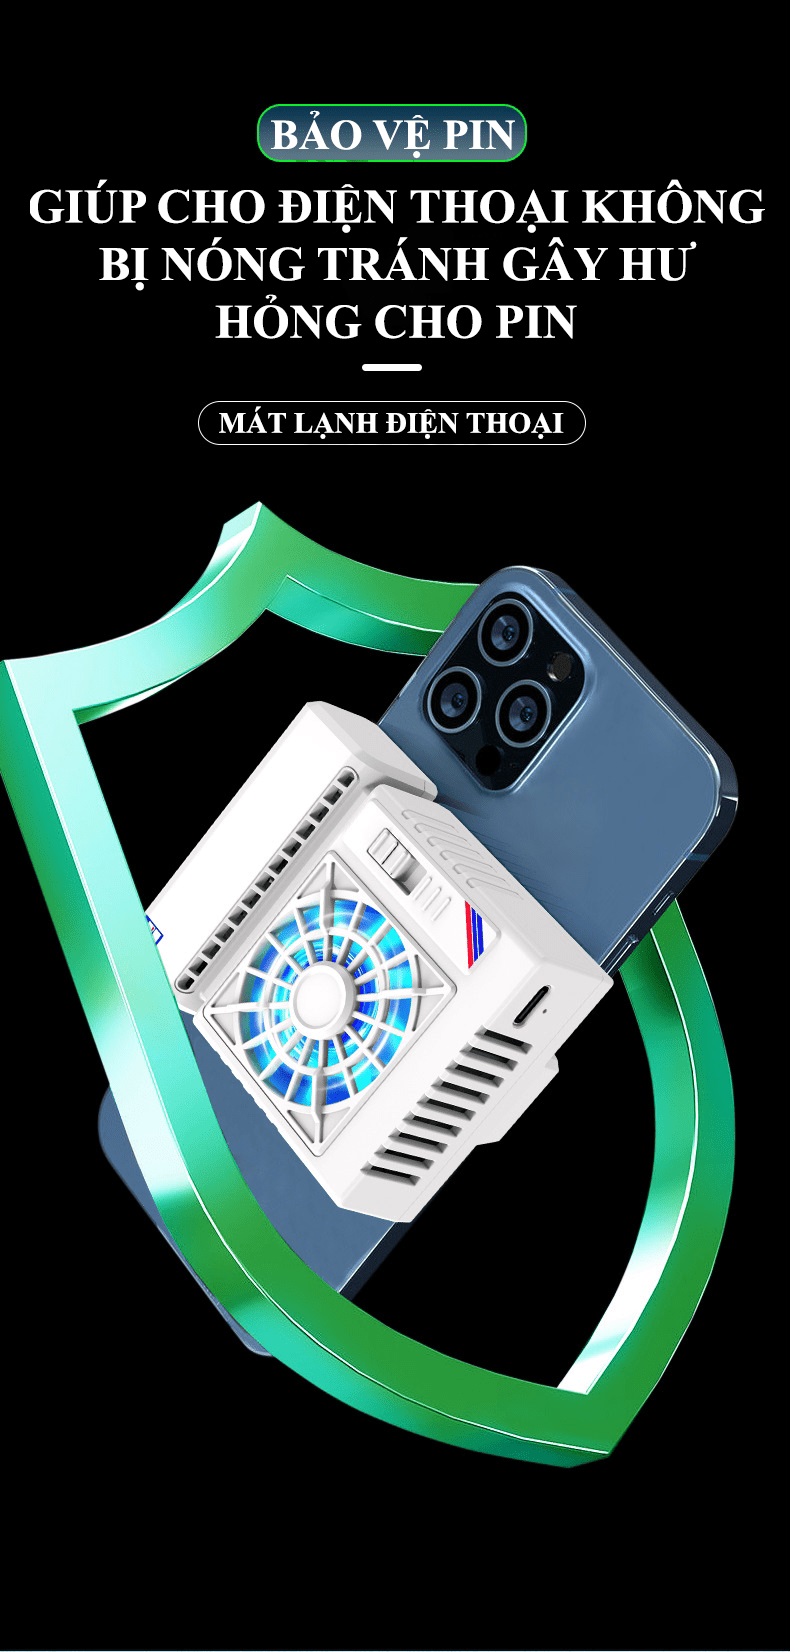 Quạt tản nhiệt điện thoại S5 có trang bị sò lạnh làm mát cực nhanh kèm theo đèn led RGB tự đổi màu - HN